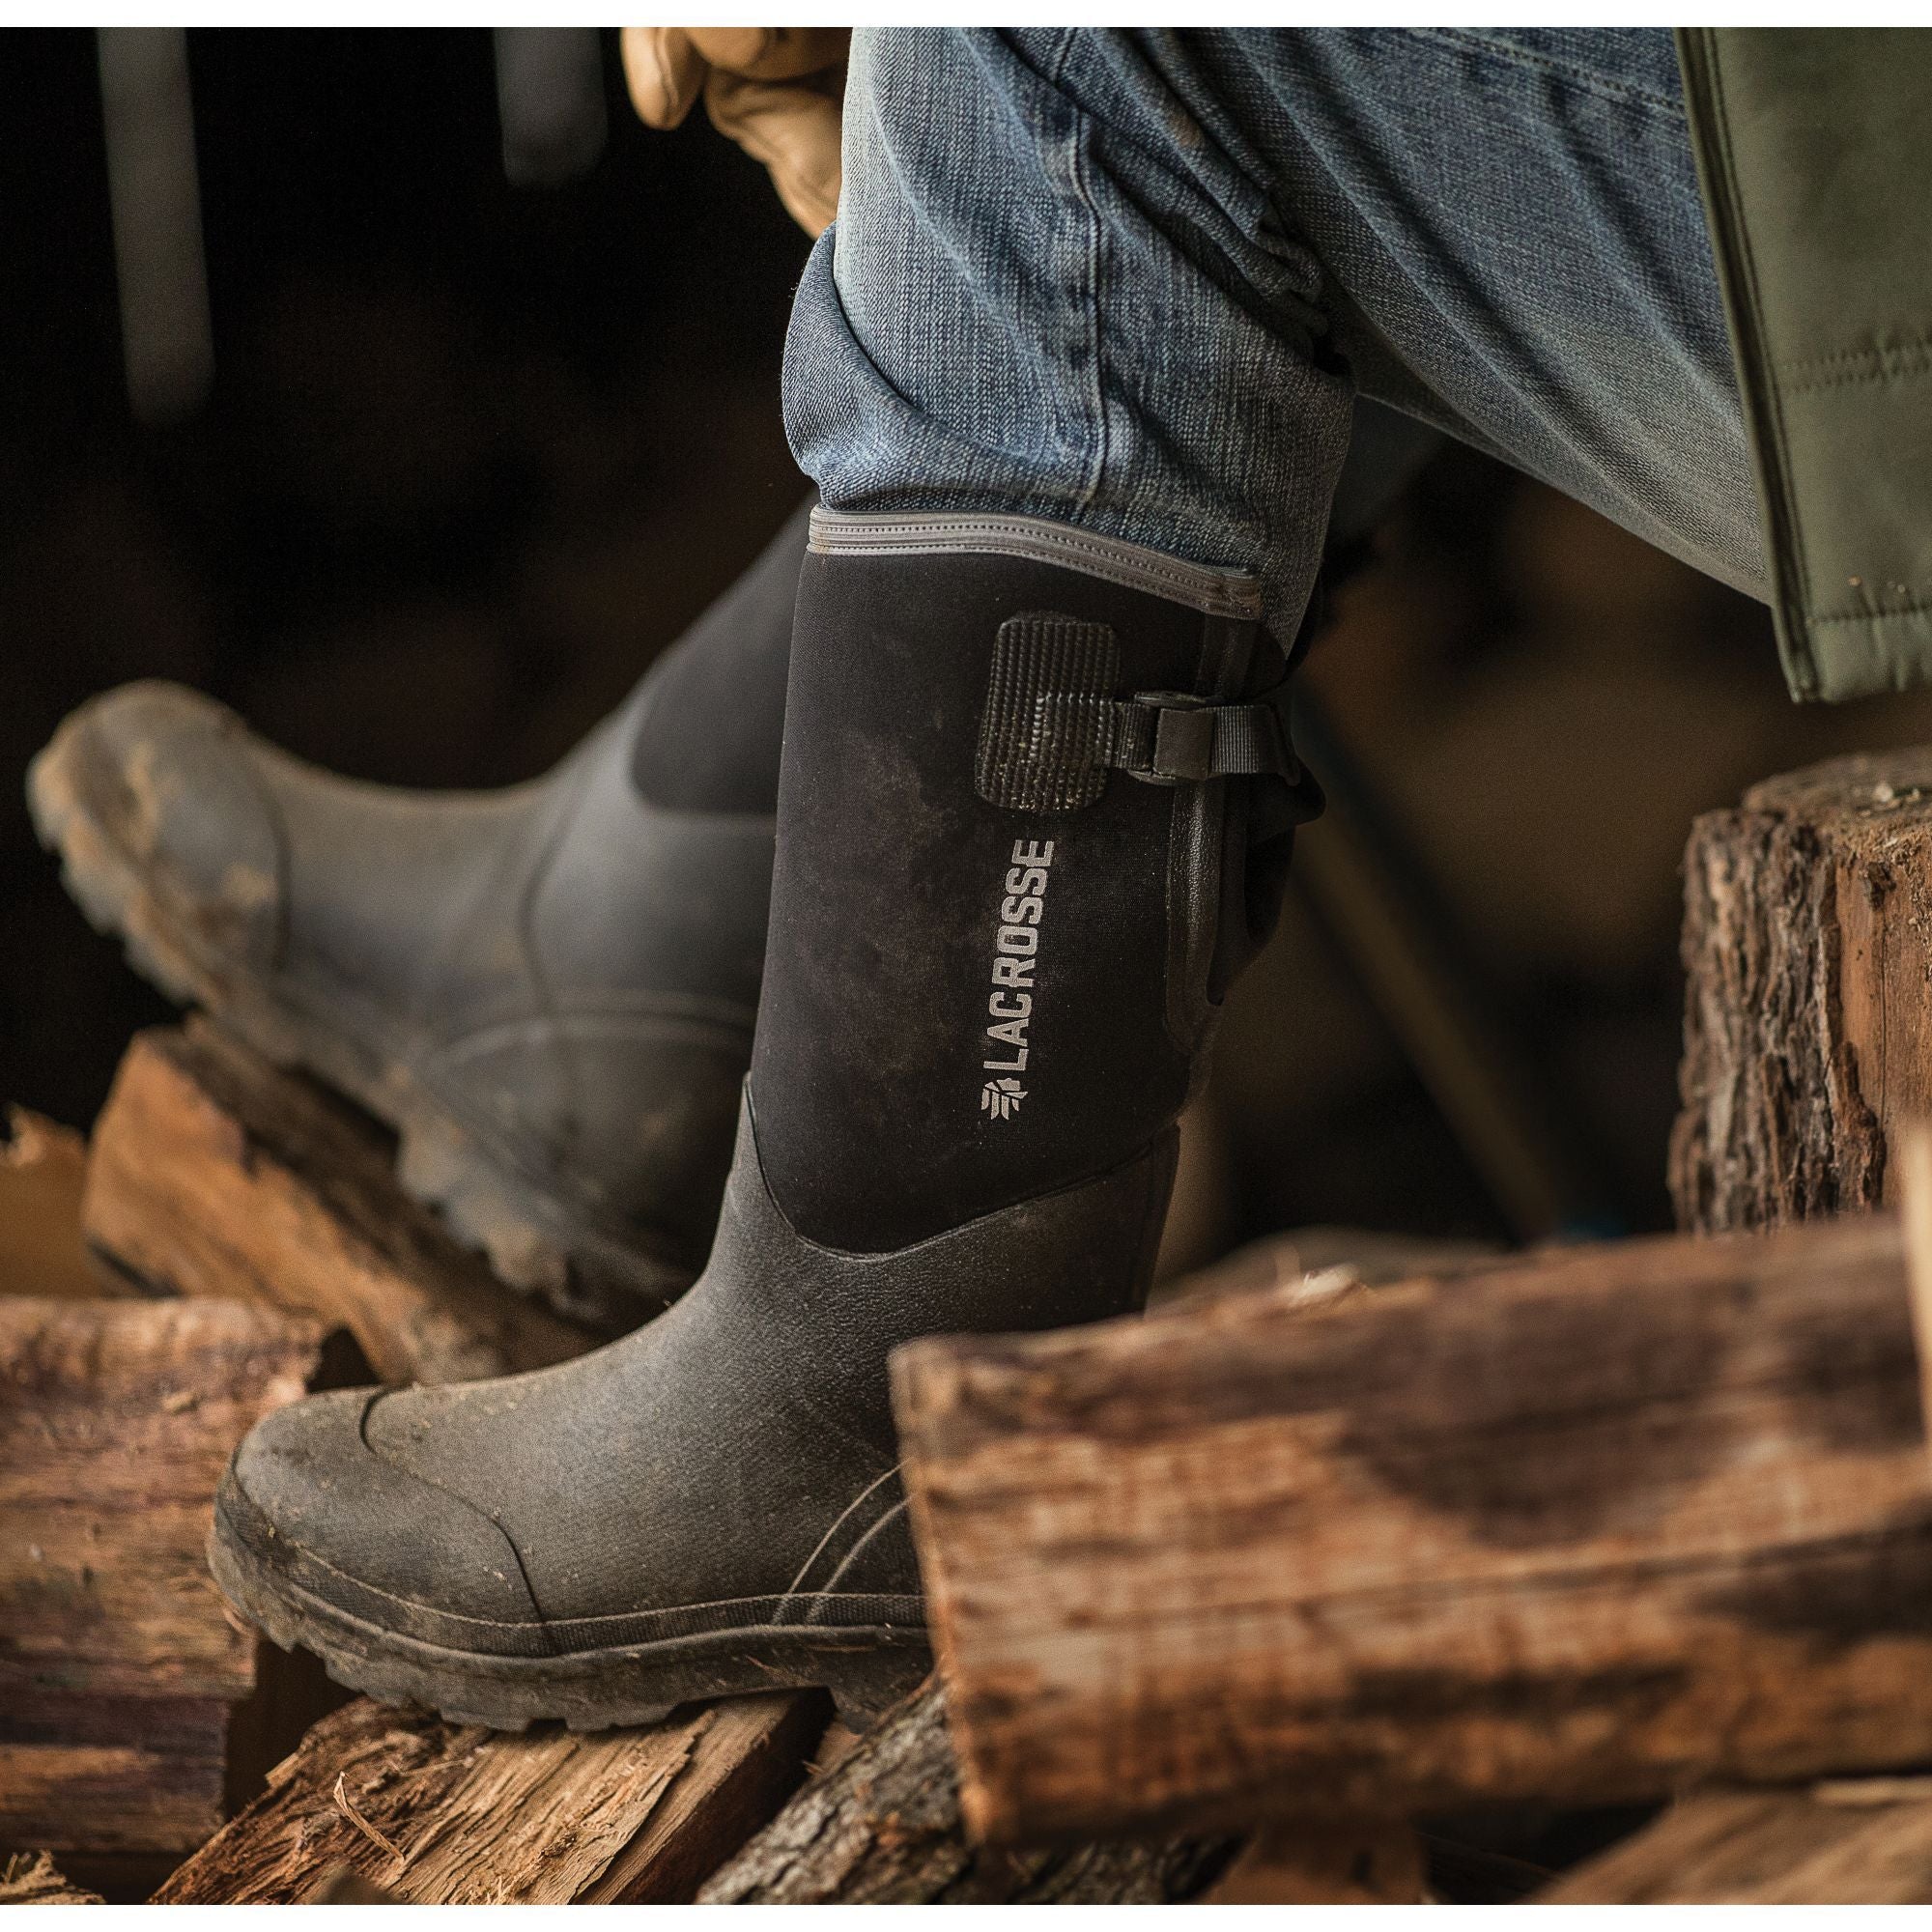 LaCrosse Men's Alpha Range 14" Ins Rubber Work Boot Black  - 602240  - Overlook Boots